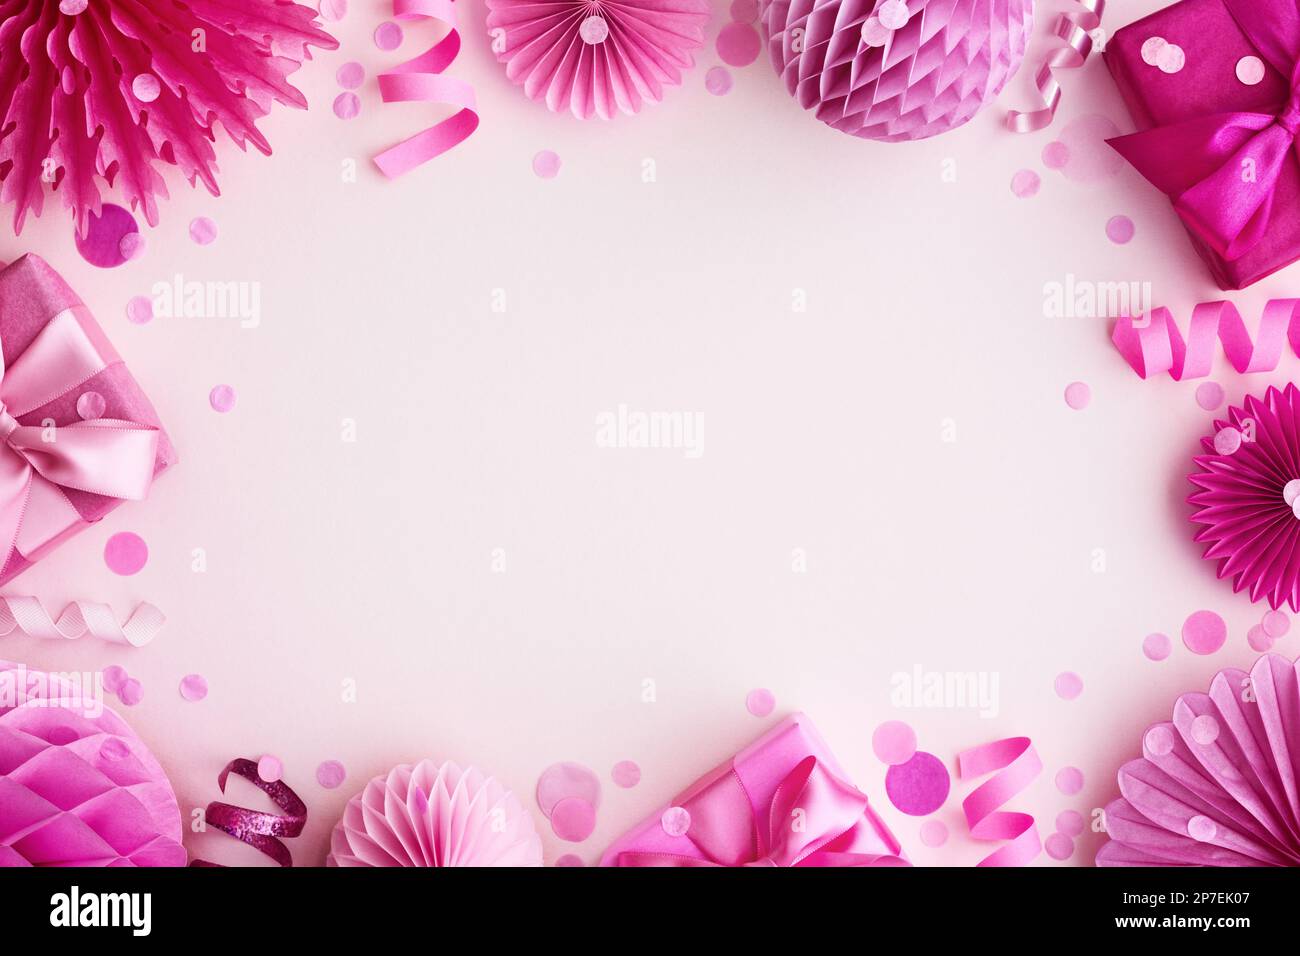 Pinkfarbener Rahmen für Party-Hintergrund mit Geburtstagsgeschenken und Dekorationen Stockfoto